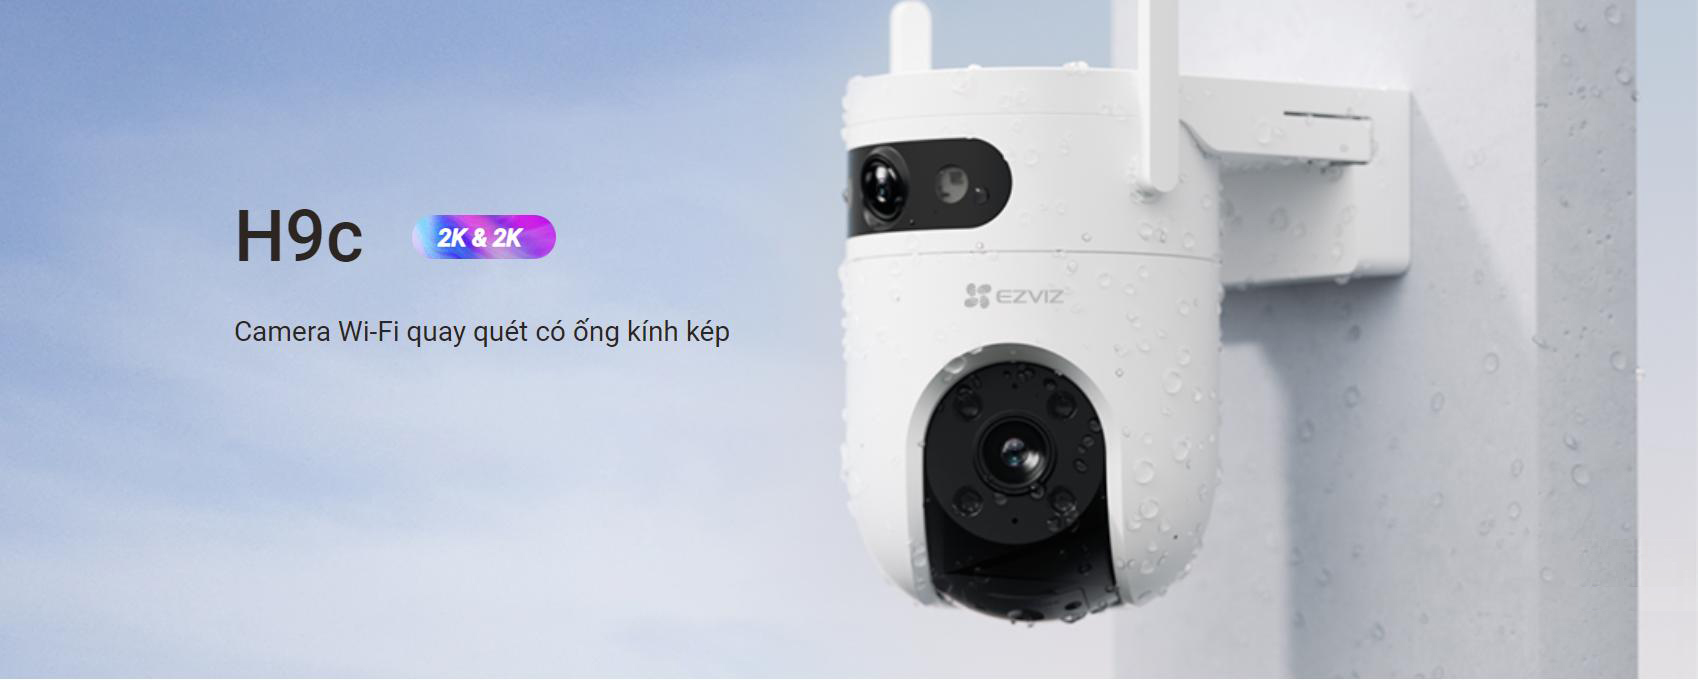 Camera Ezviz H9C tích hợp 2 ống kính cho 2 tầm nhìn độc lập